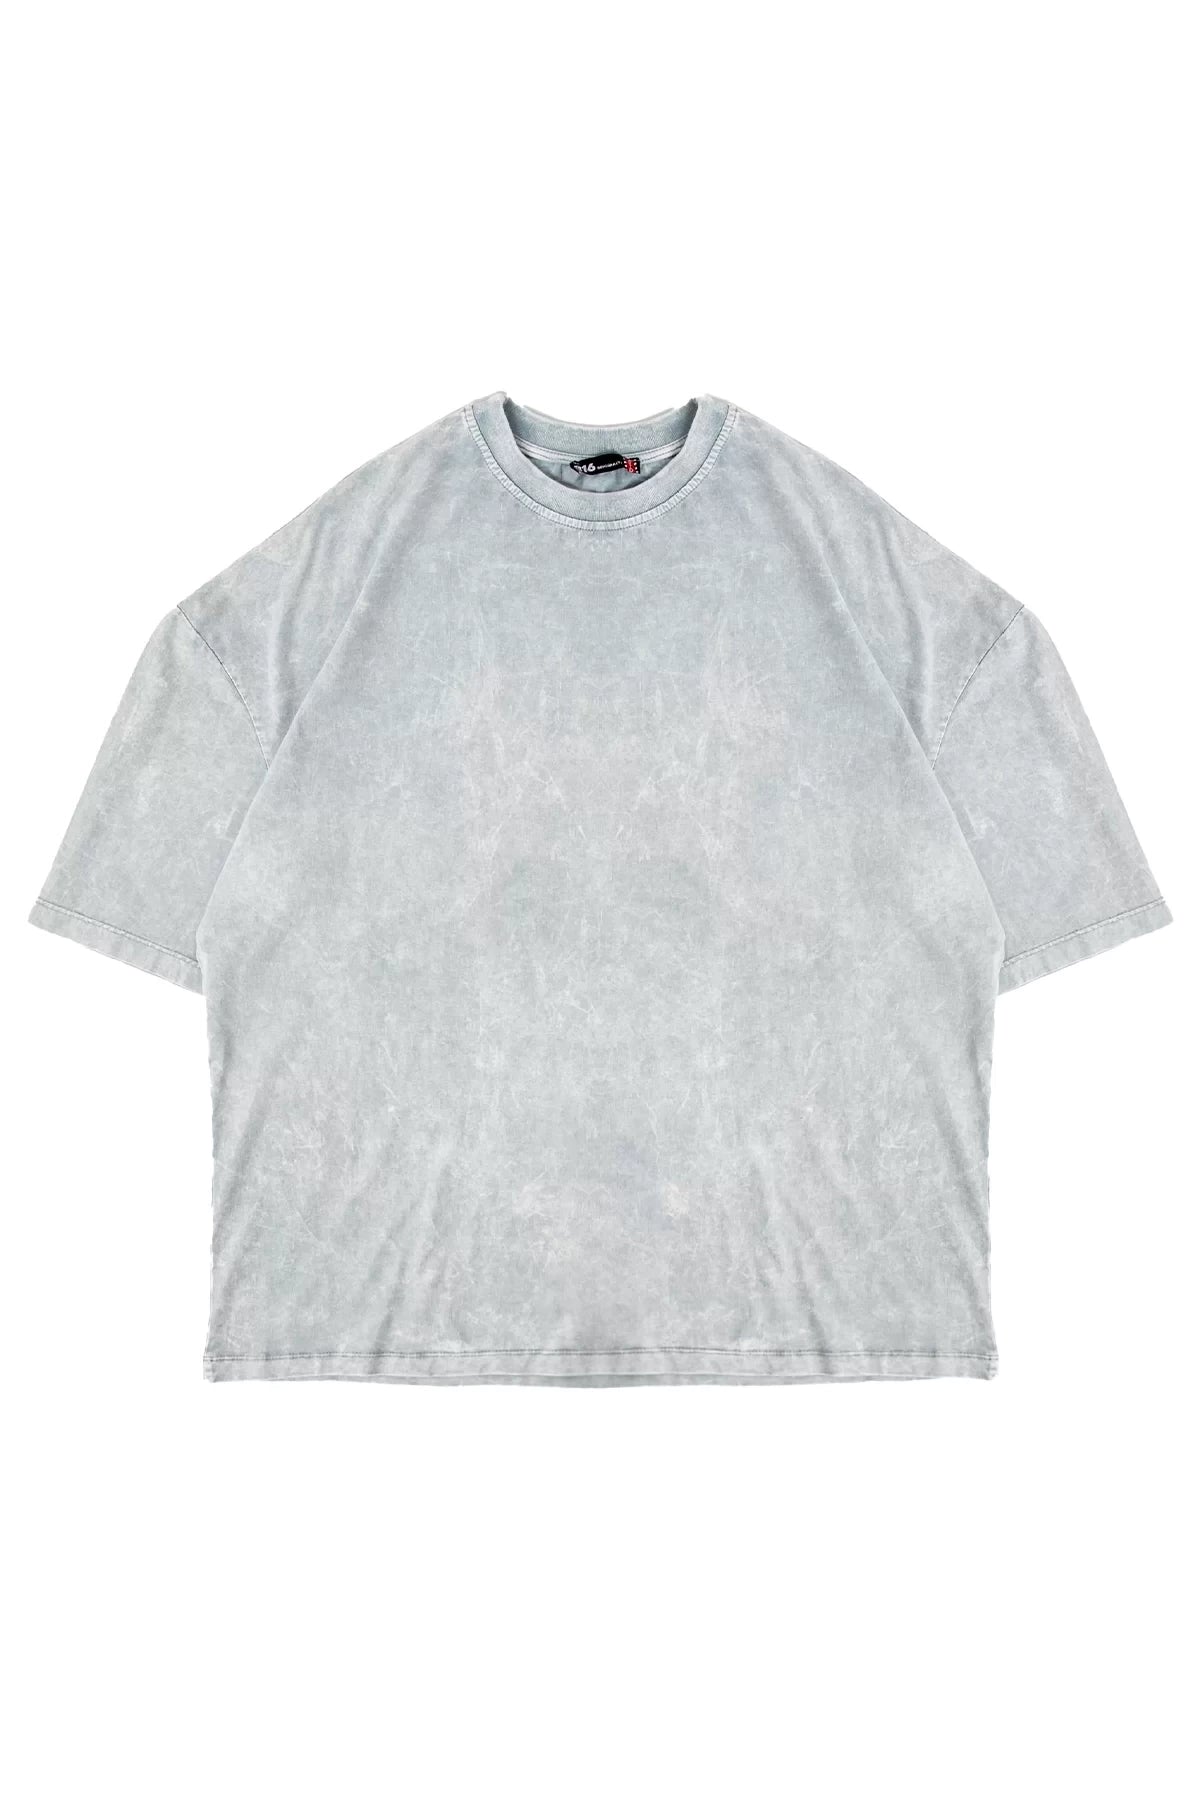 Acid wash beyaz oversize tişört - melongeneCo